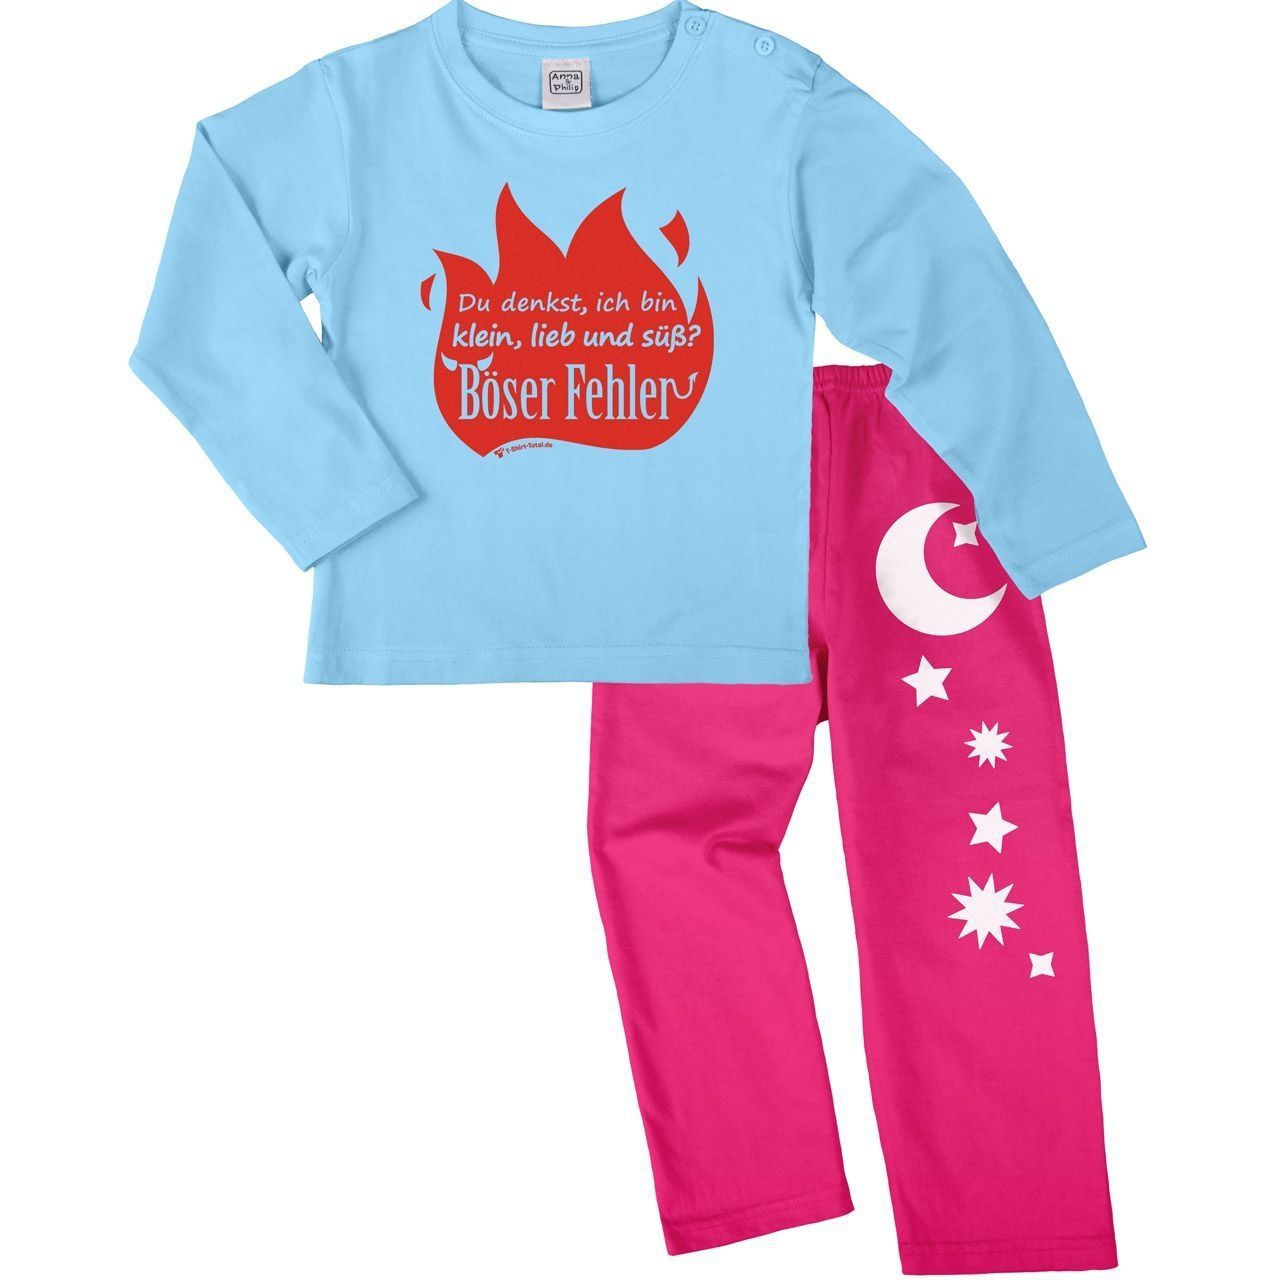 Böser Fehler Pyjama Set hellblau / pink 110 / 116